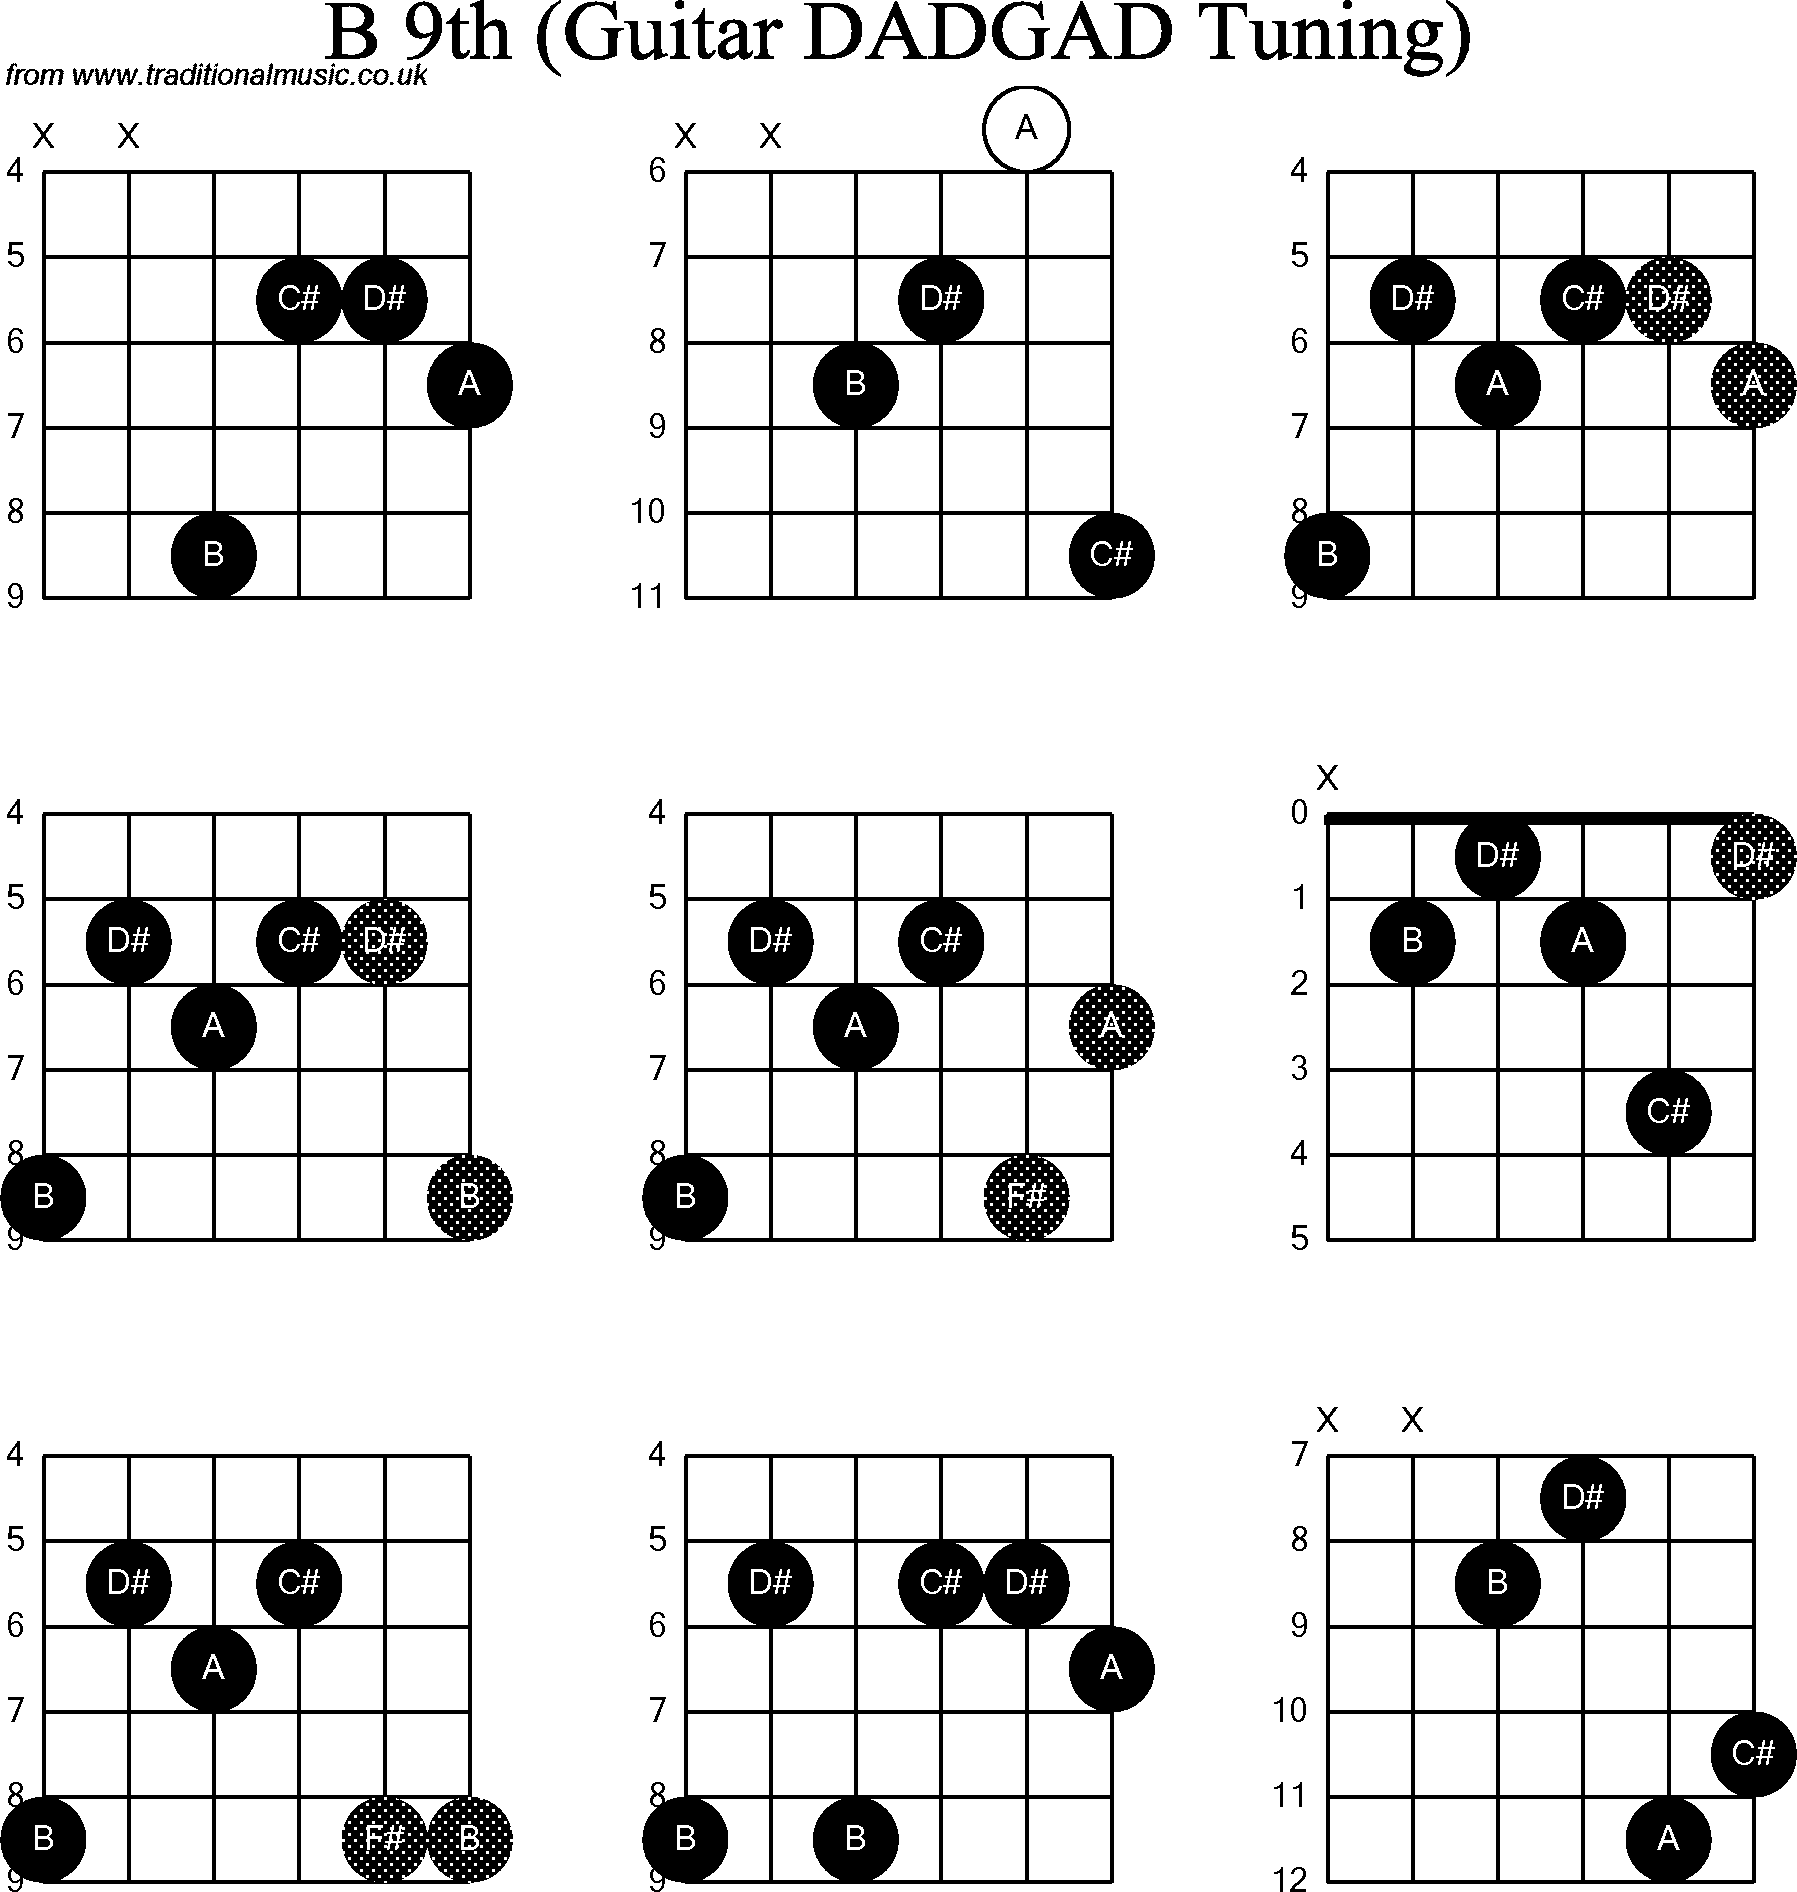 Chord Diagrams for D Modal Guitar(DADGAD), B9th